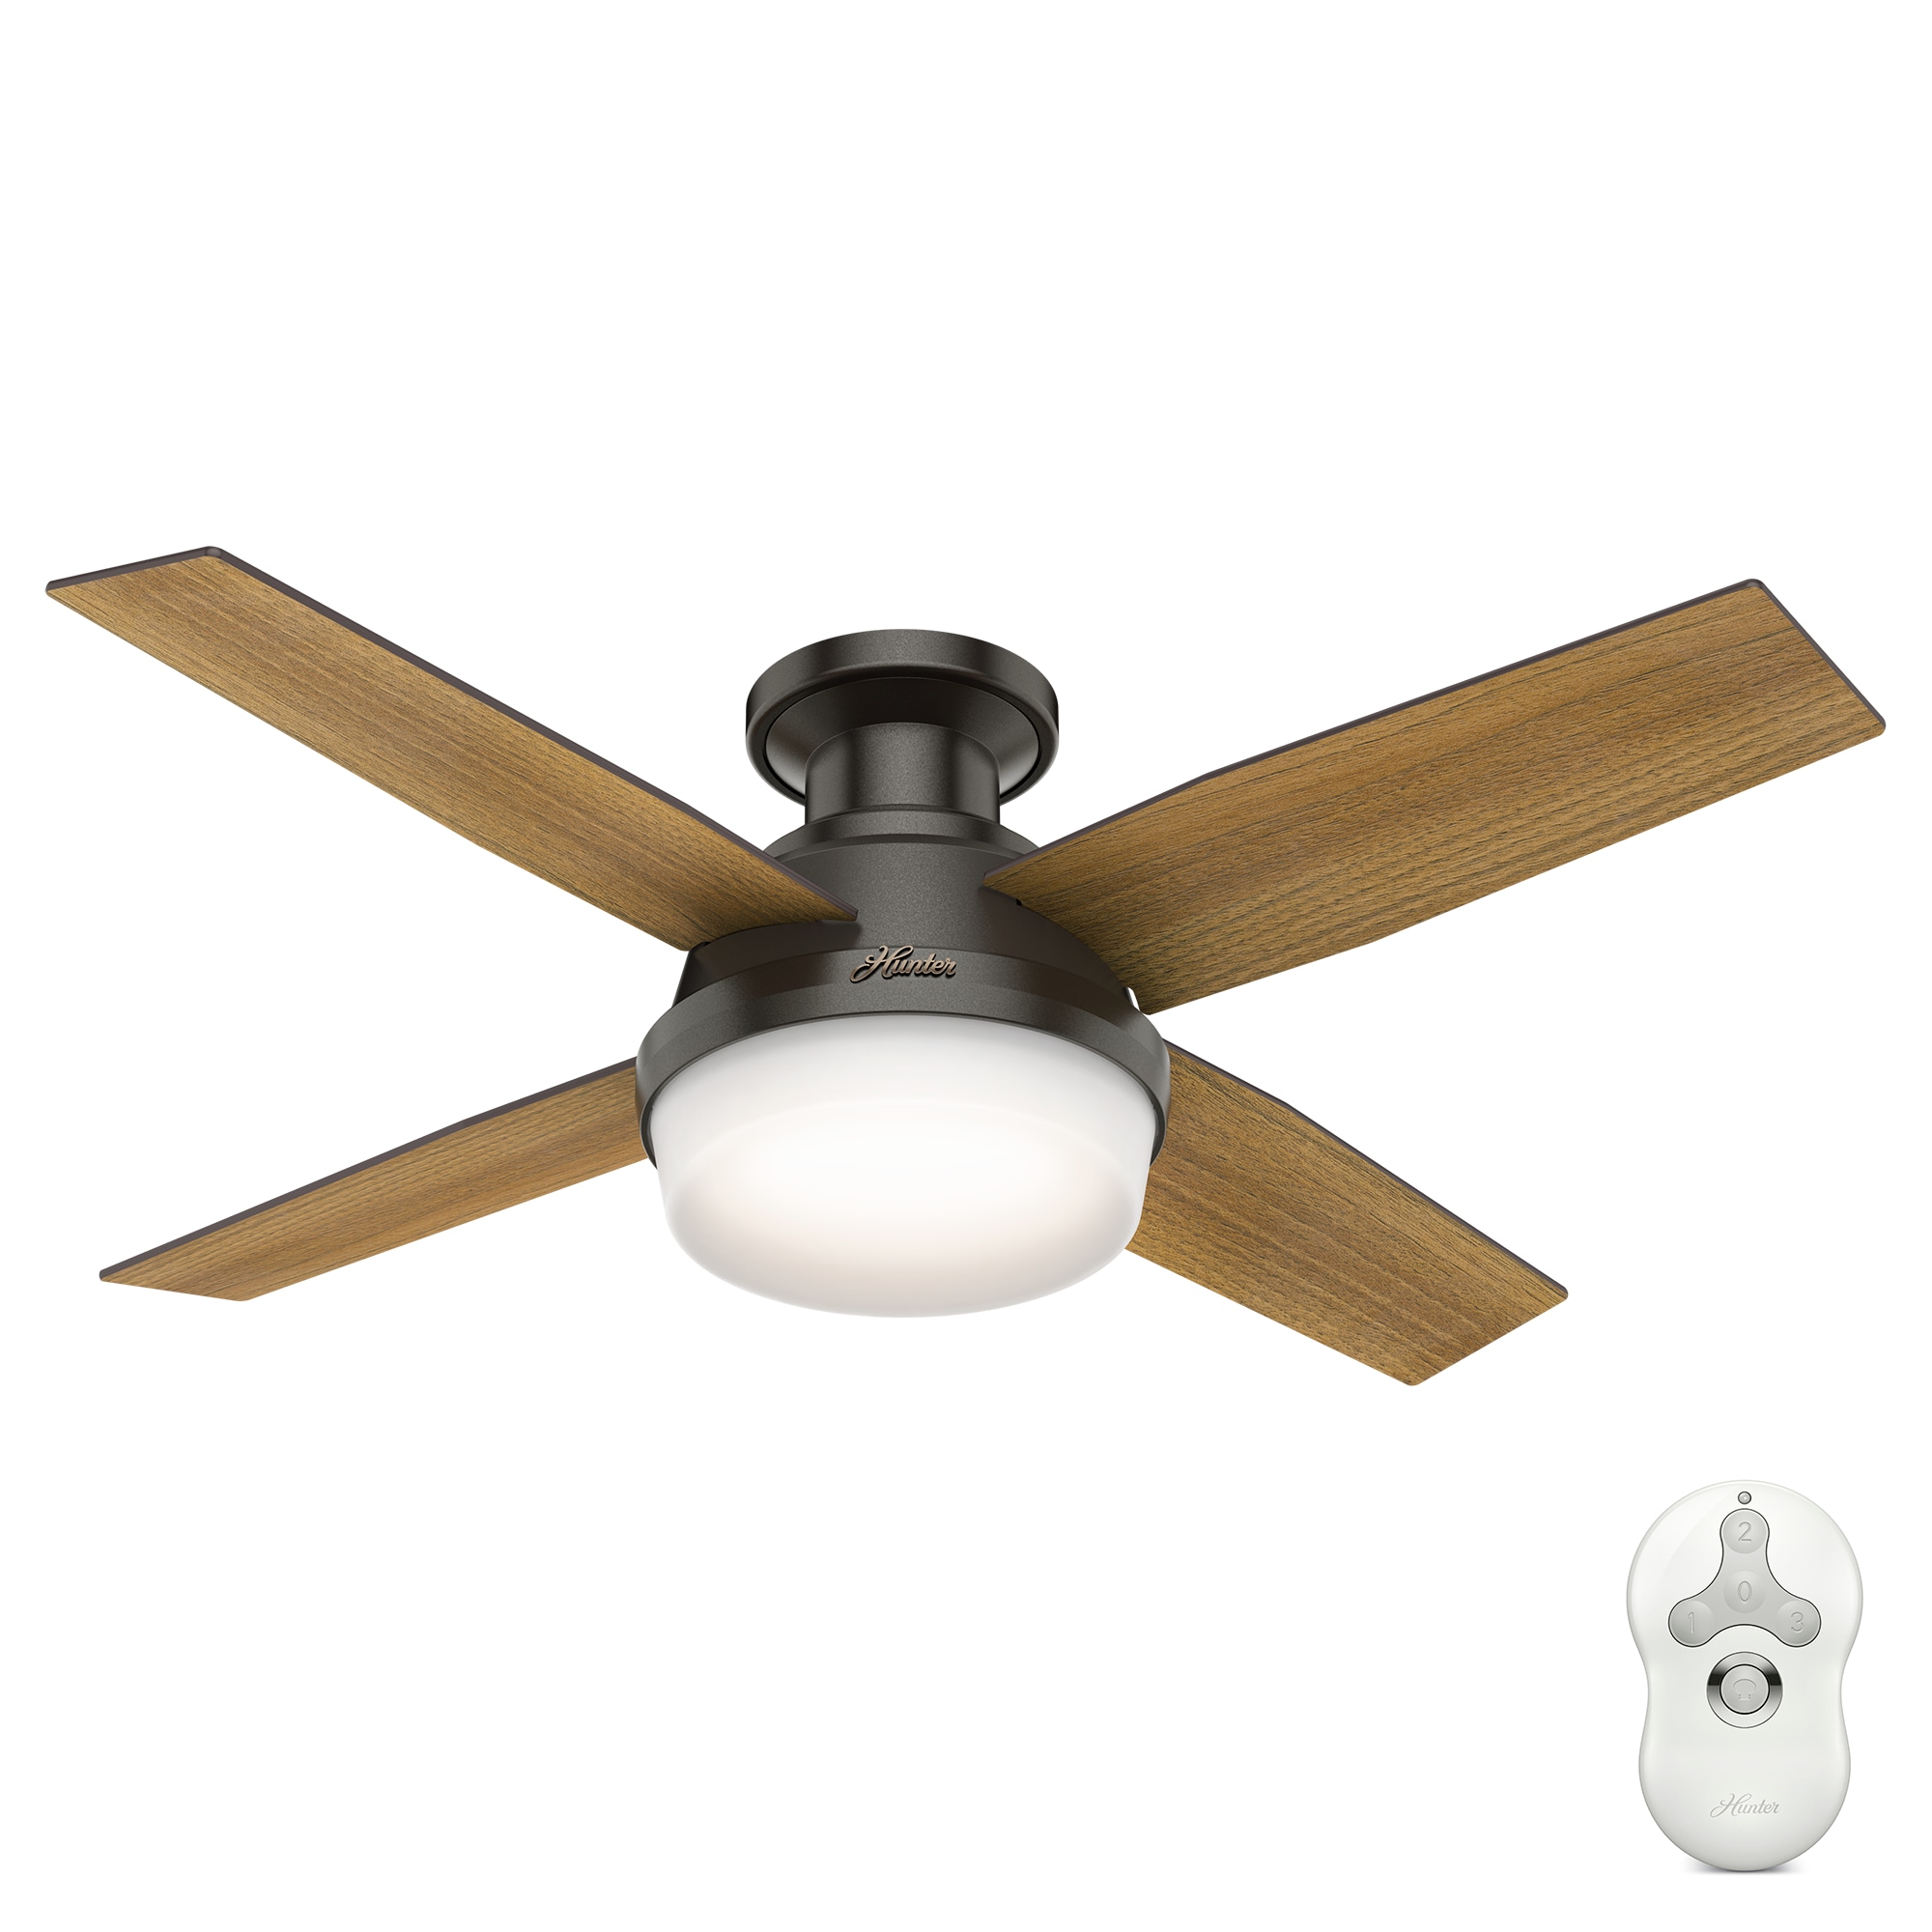 Hunter Fan 44 in New Bronze Finish Ceiling Fan w/ Light Fitter & Remote Control 